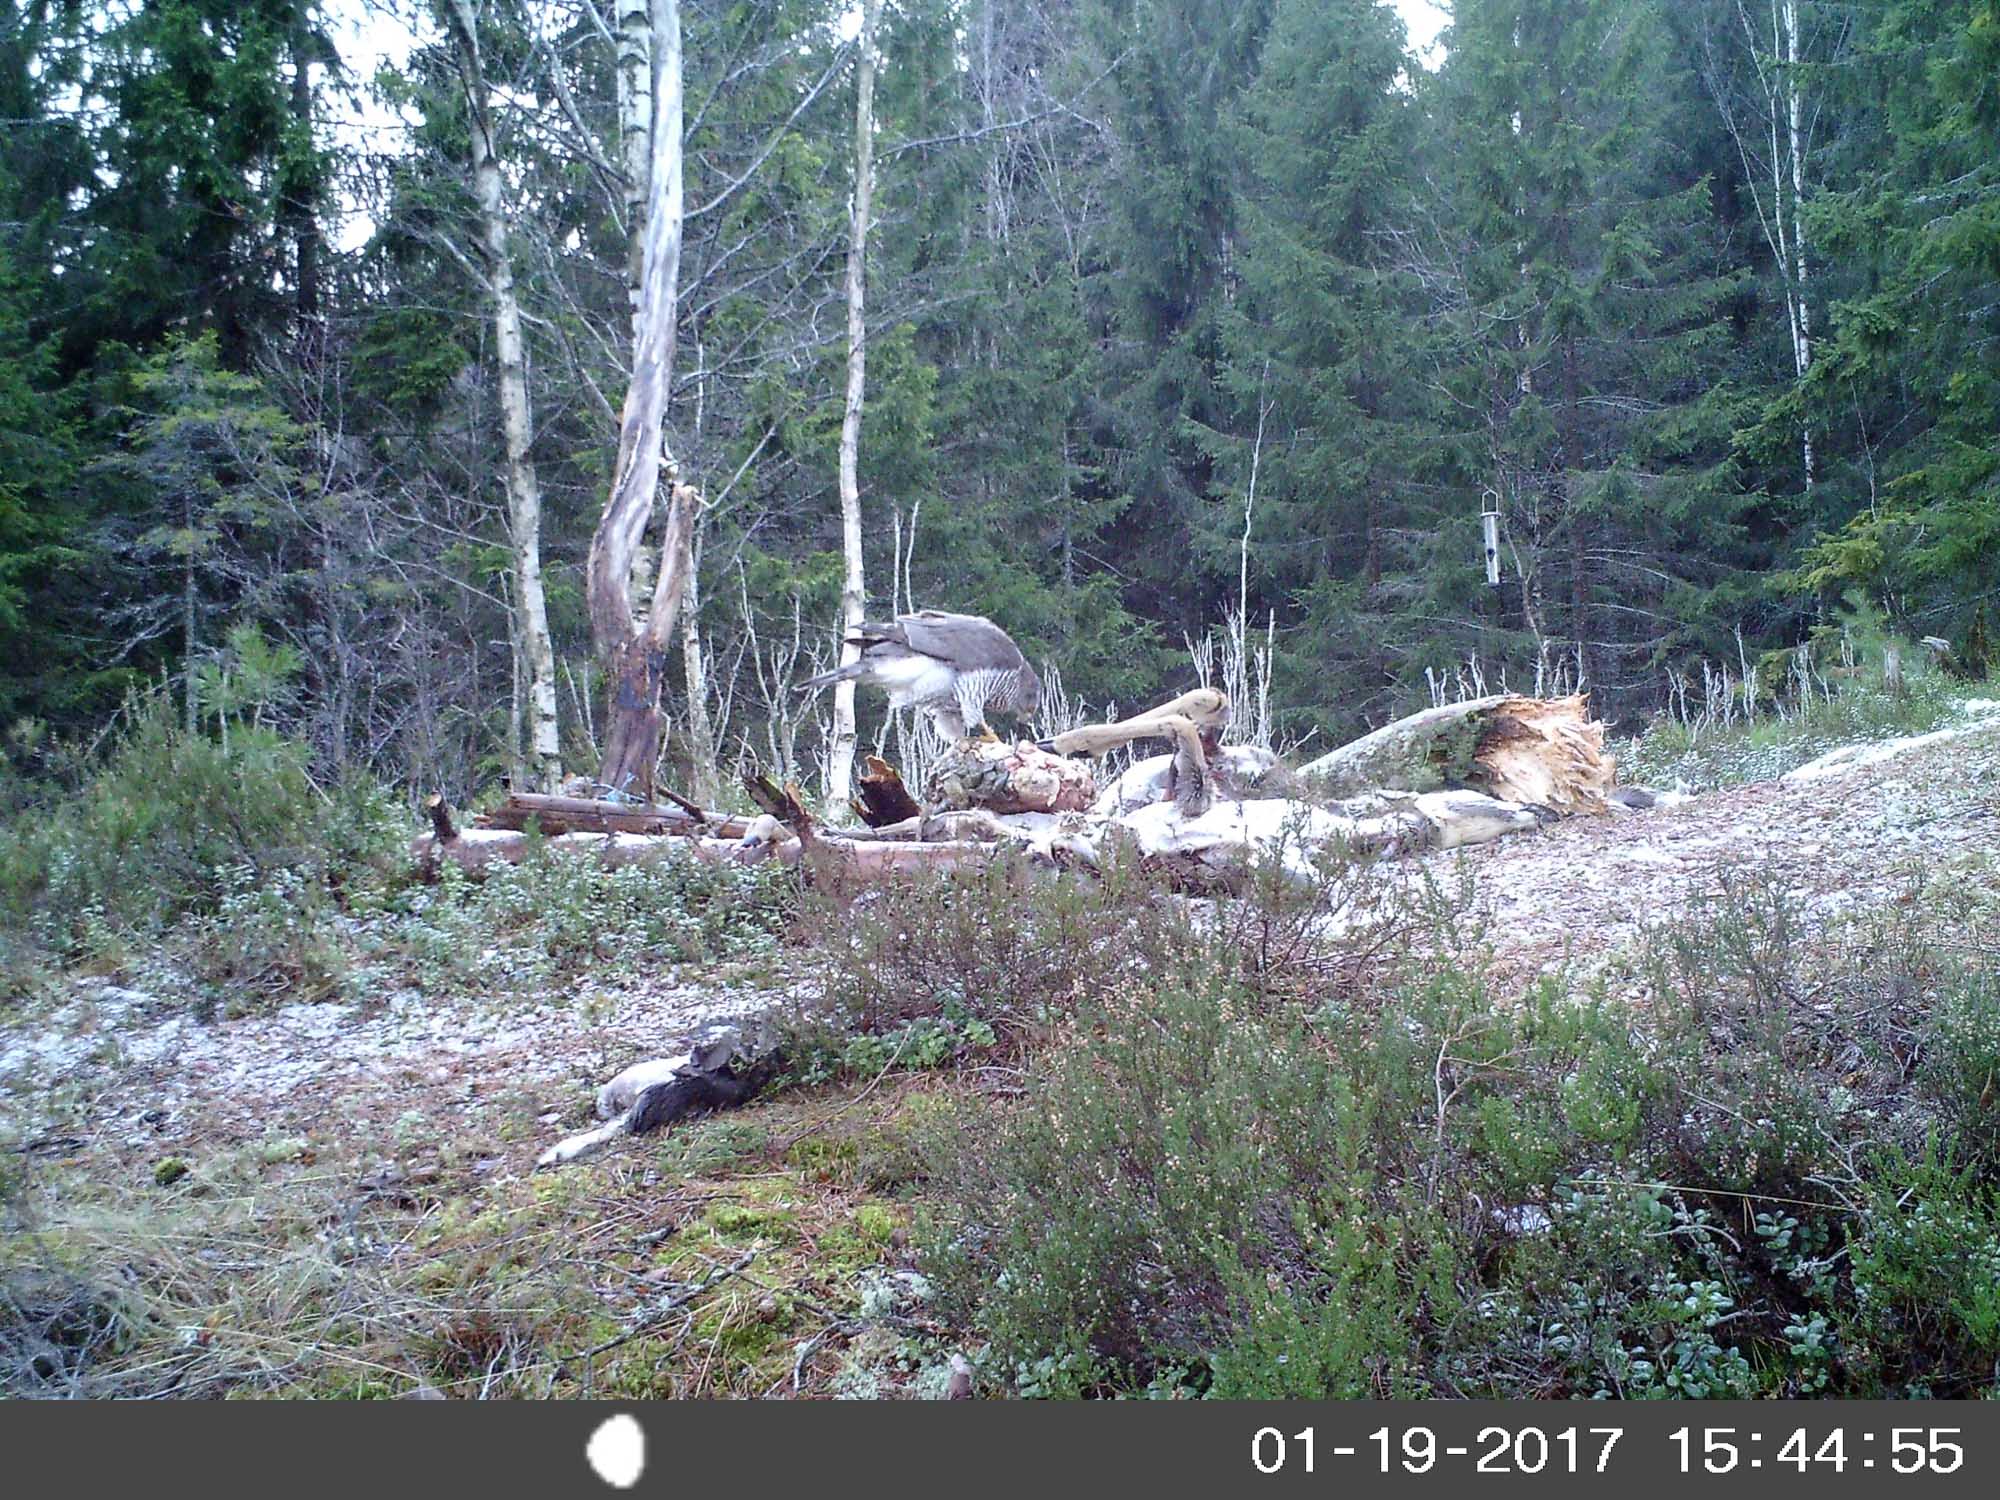   Da ser det ut som en ny og voksen Hauk har slått seg ned ved skogskjulet. Dato og klokkeslett står nederst på bildet.    Bildet er tatt med viltkamera.  